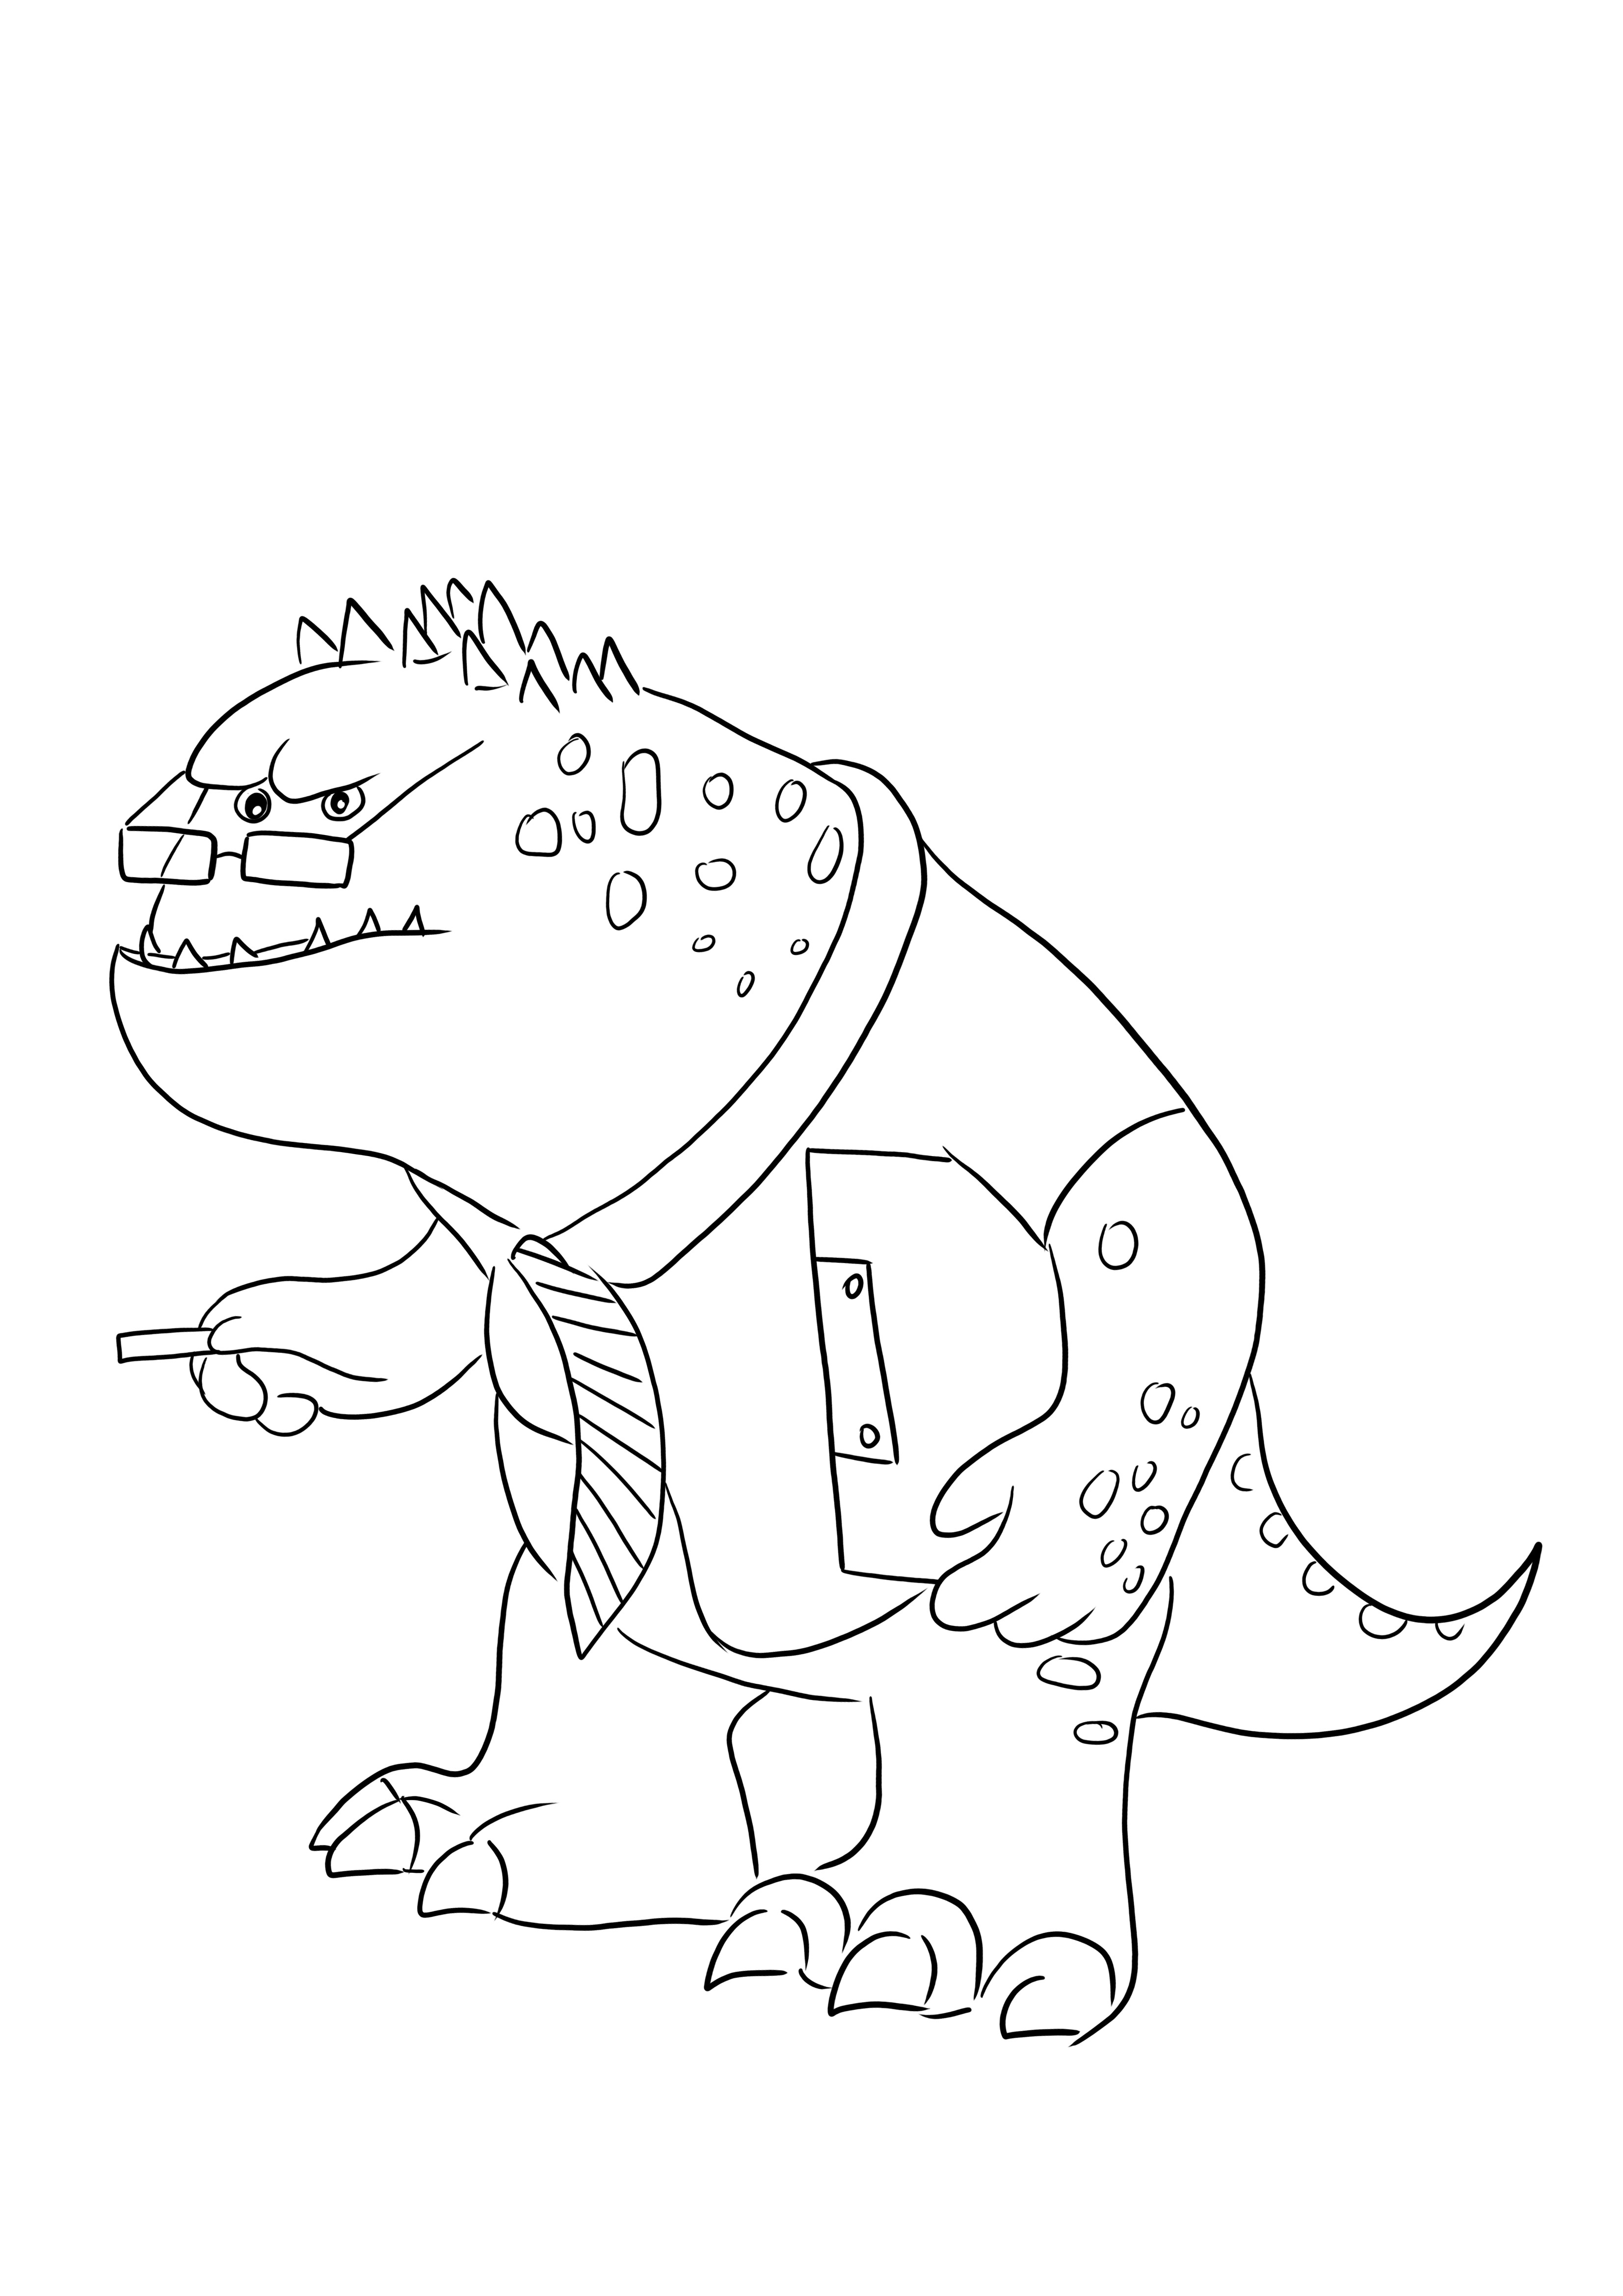 Strict Professor Knight: una imagen para colorear con un personaje divertido de Monsters Inc para descargar gratis